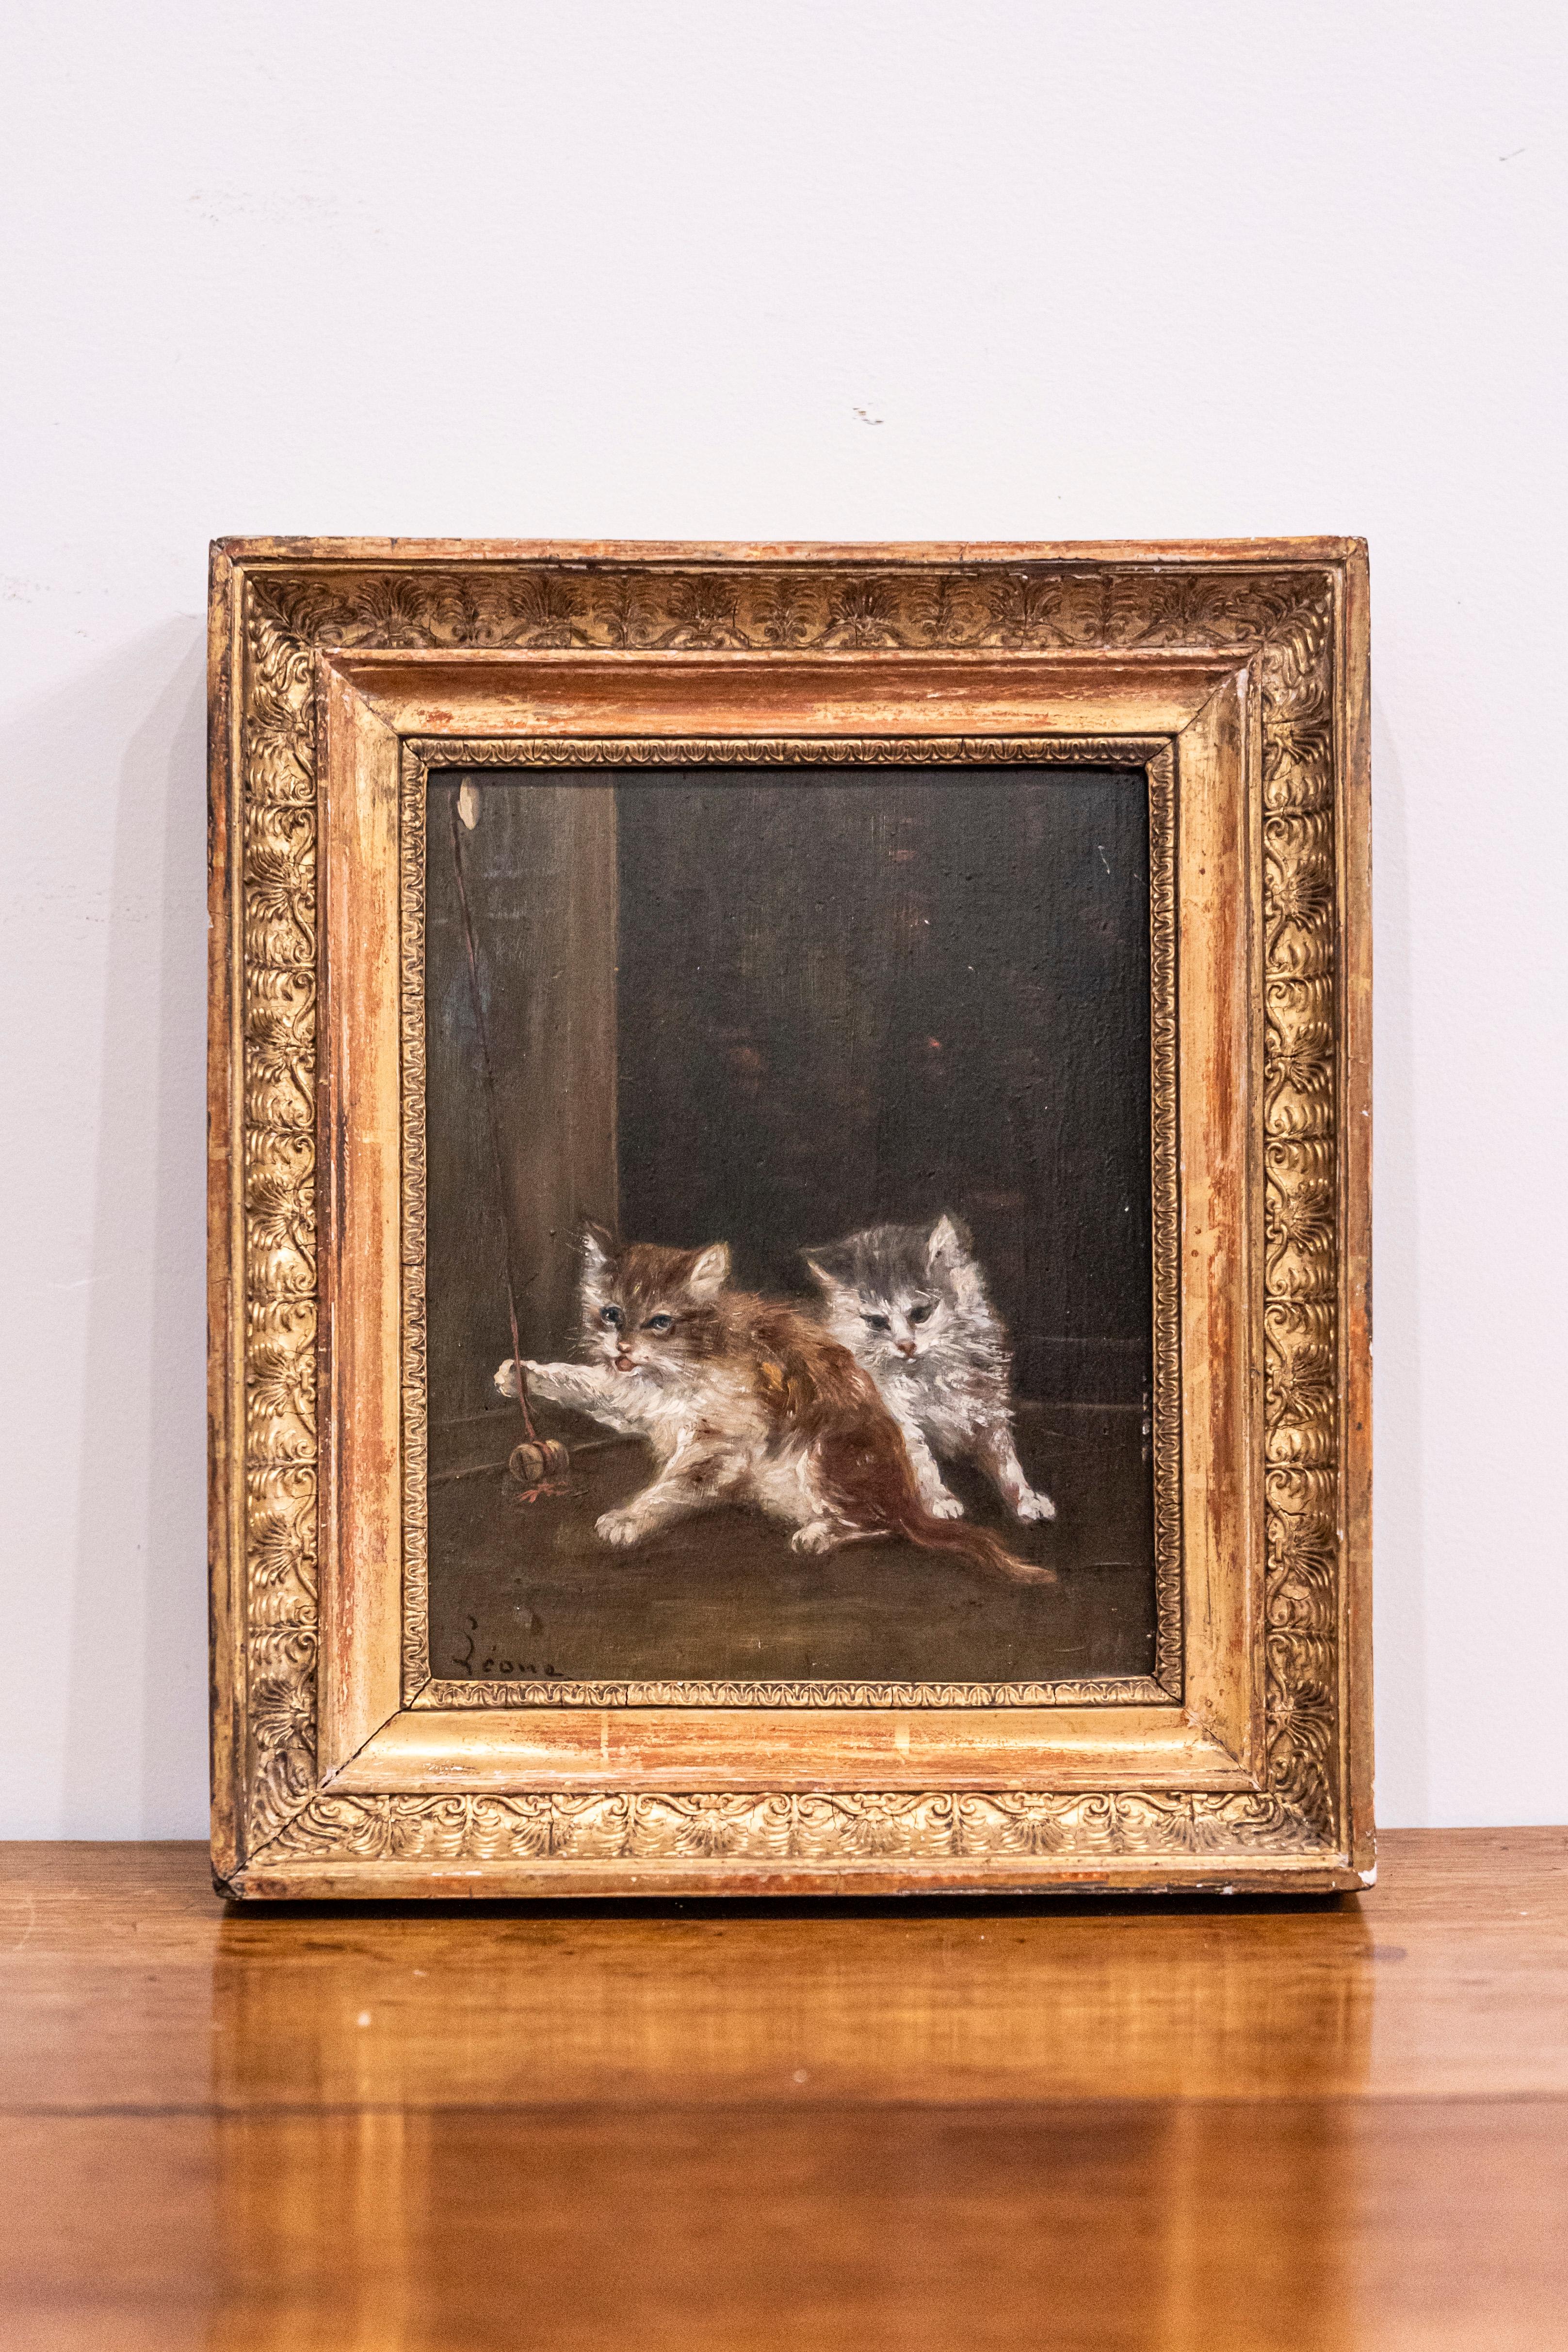 Ein französisches Öl auf Leinwand Tiergemälde signiert Laroche aus dem späten 19. Jahrhundert mit Goldholzrahmen. Dieses französische Gemälde in Öl auf Leinwand zeigt zwei niedliche Kätzchen, die mit einer Korkschnur spielen. Vor einem dunklen